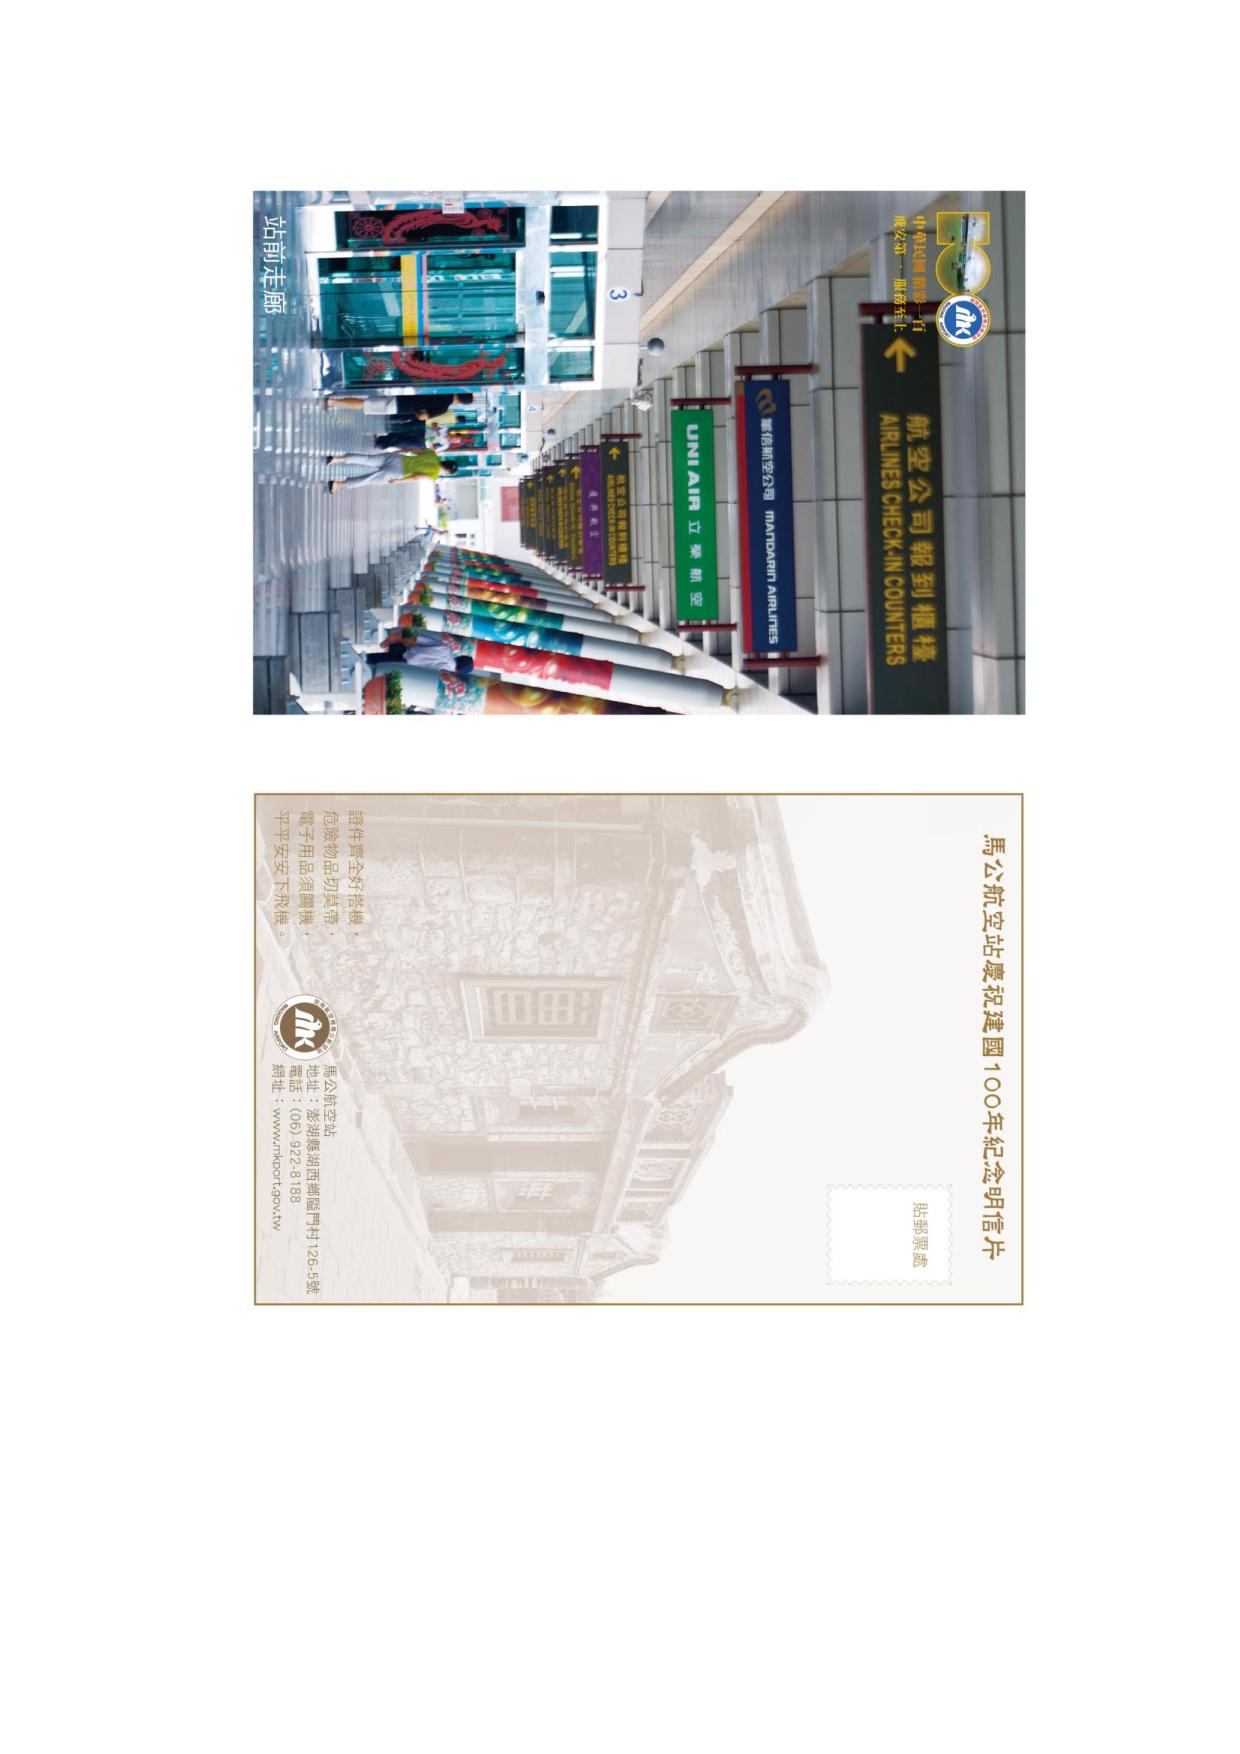 馬公站慶祝建國一百年紀念明信片6